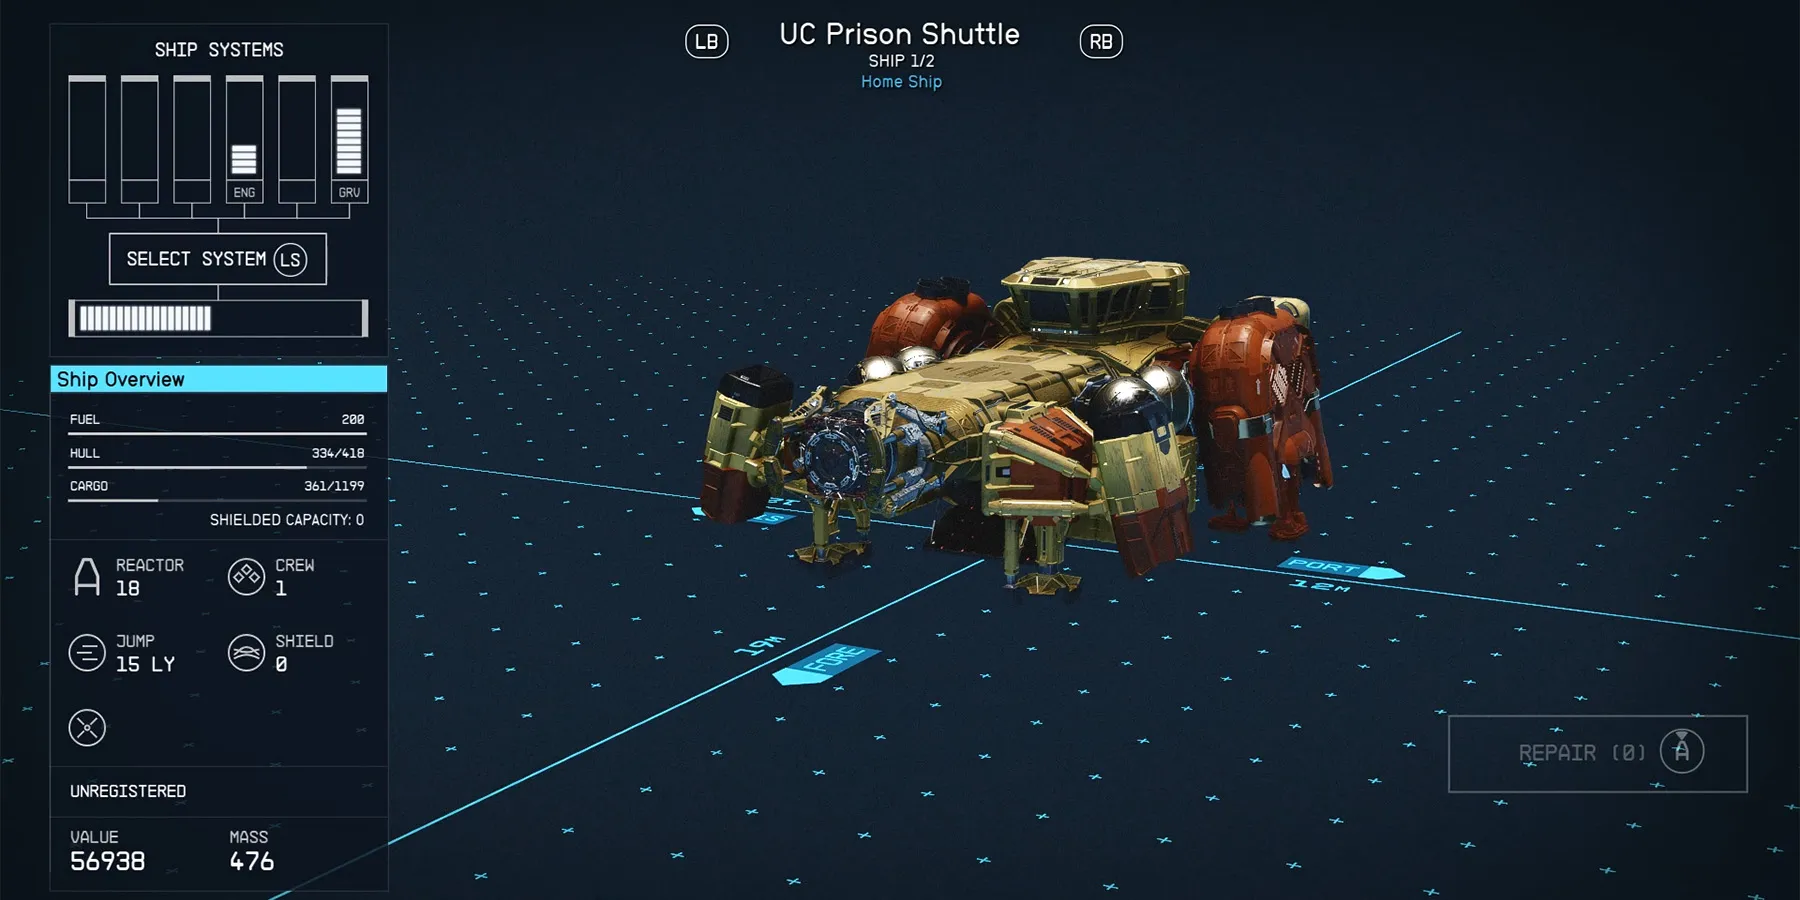 UC prison shuttle spaceship in starfield